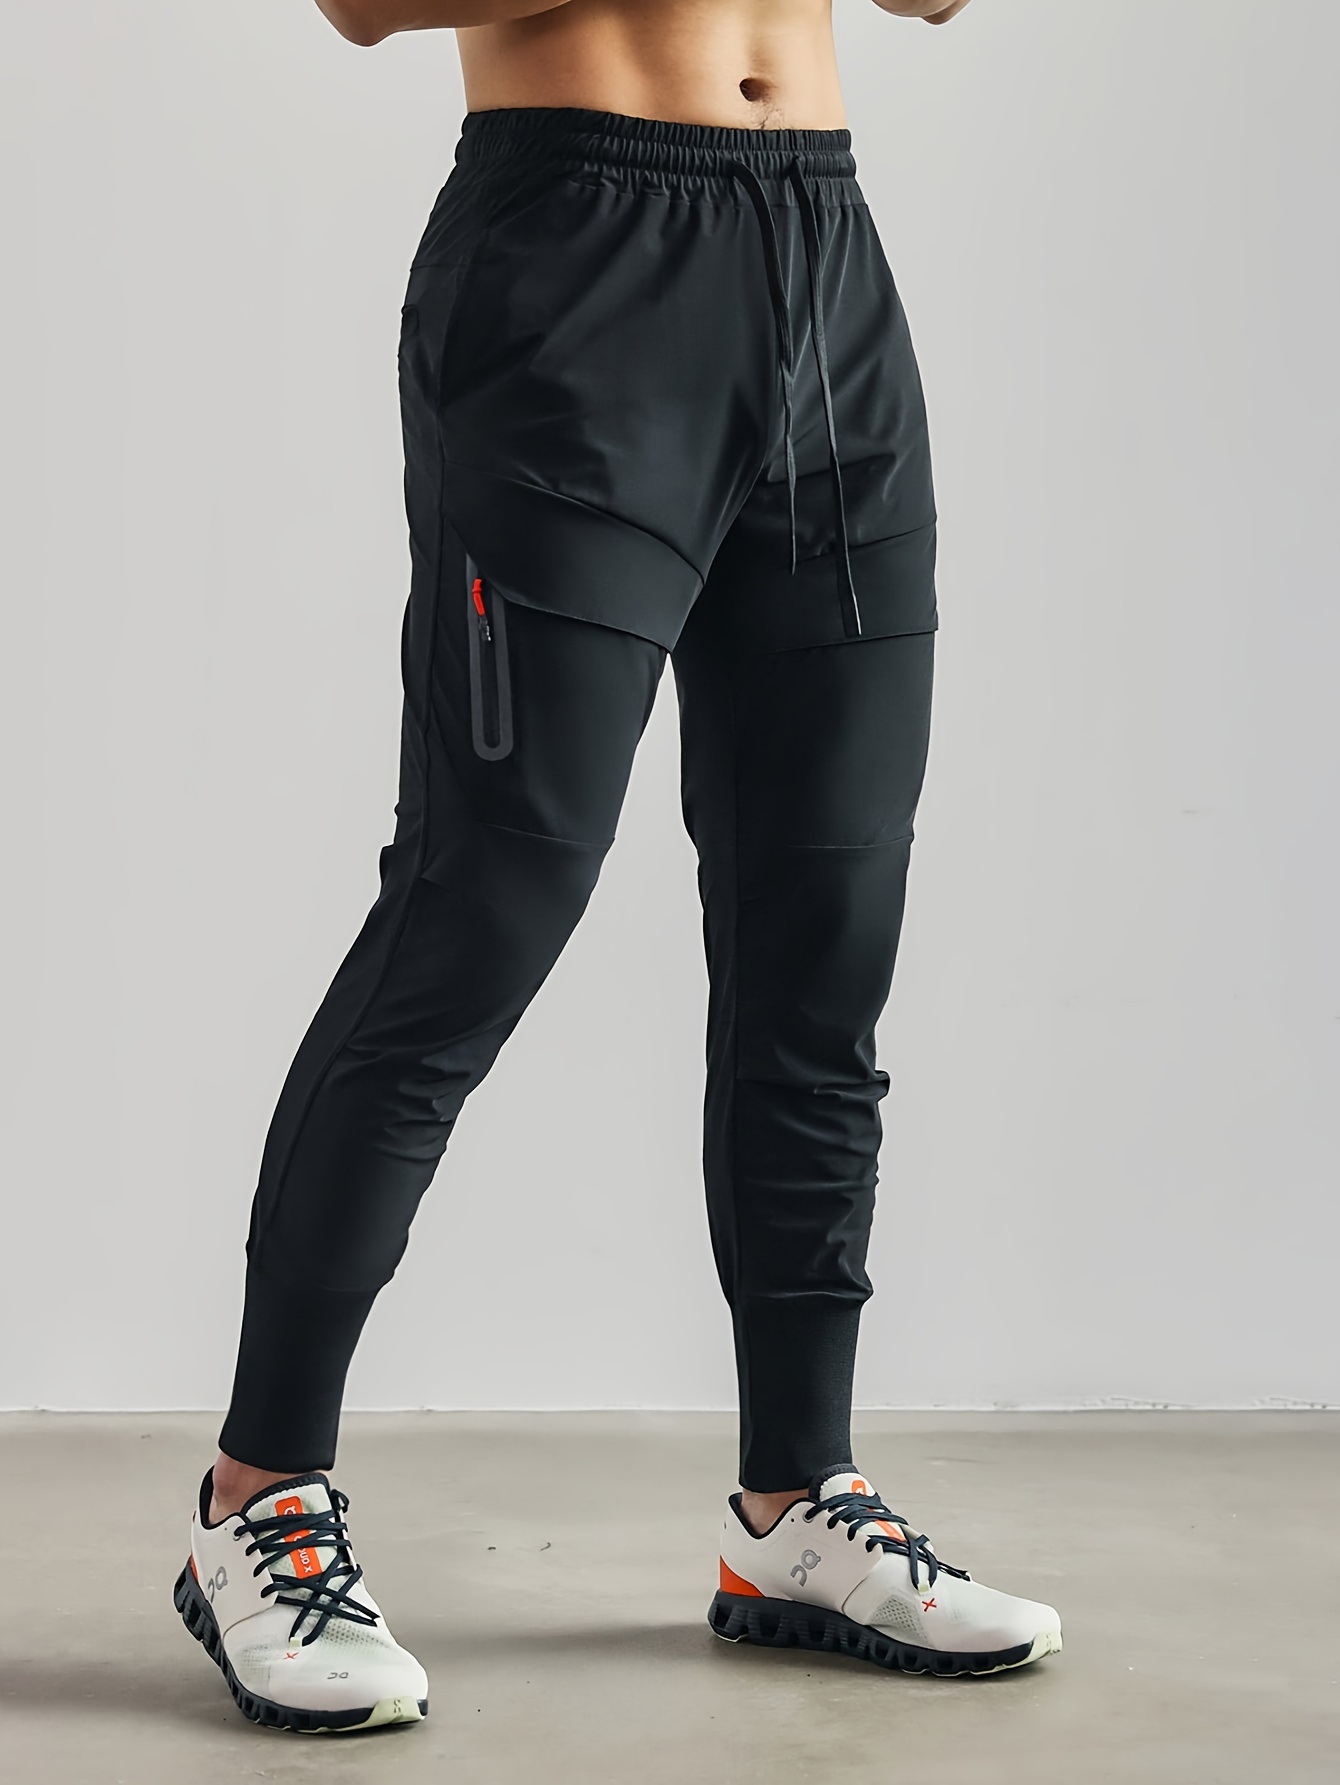 Men's Sweatpants, Joggers, Track Pants & Workout Pants